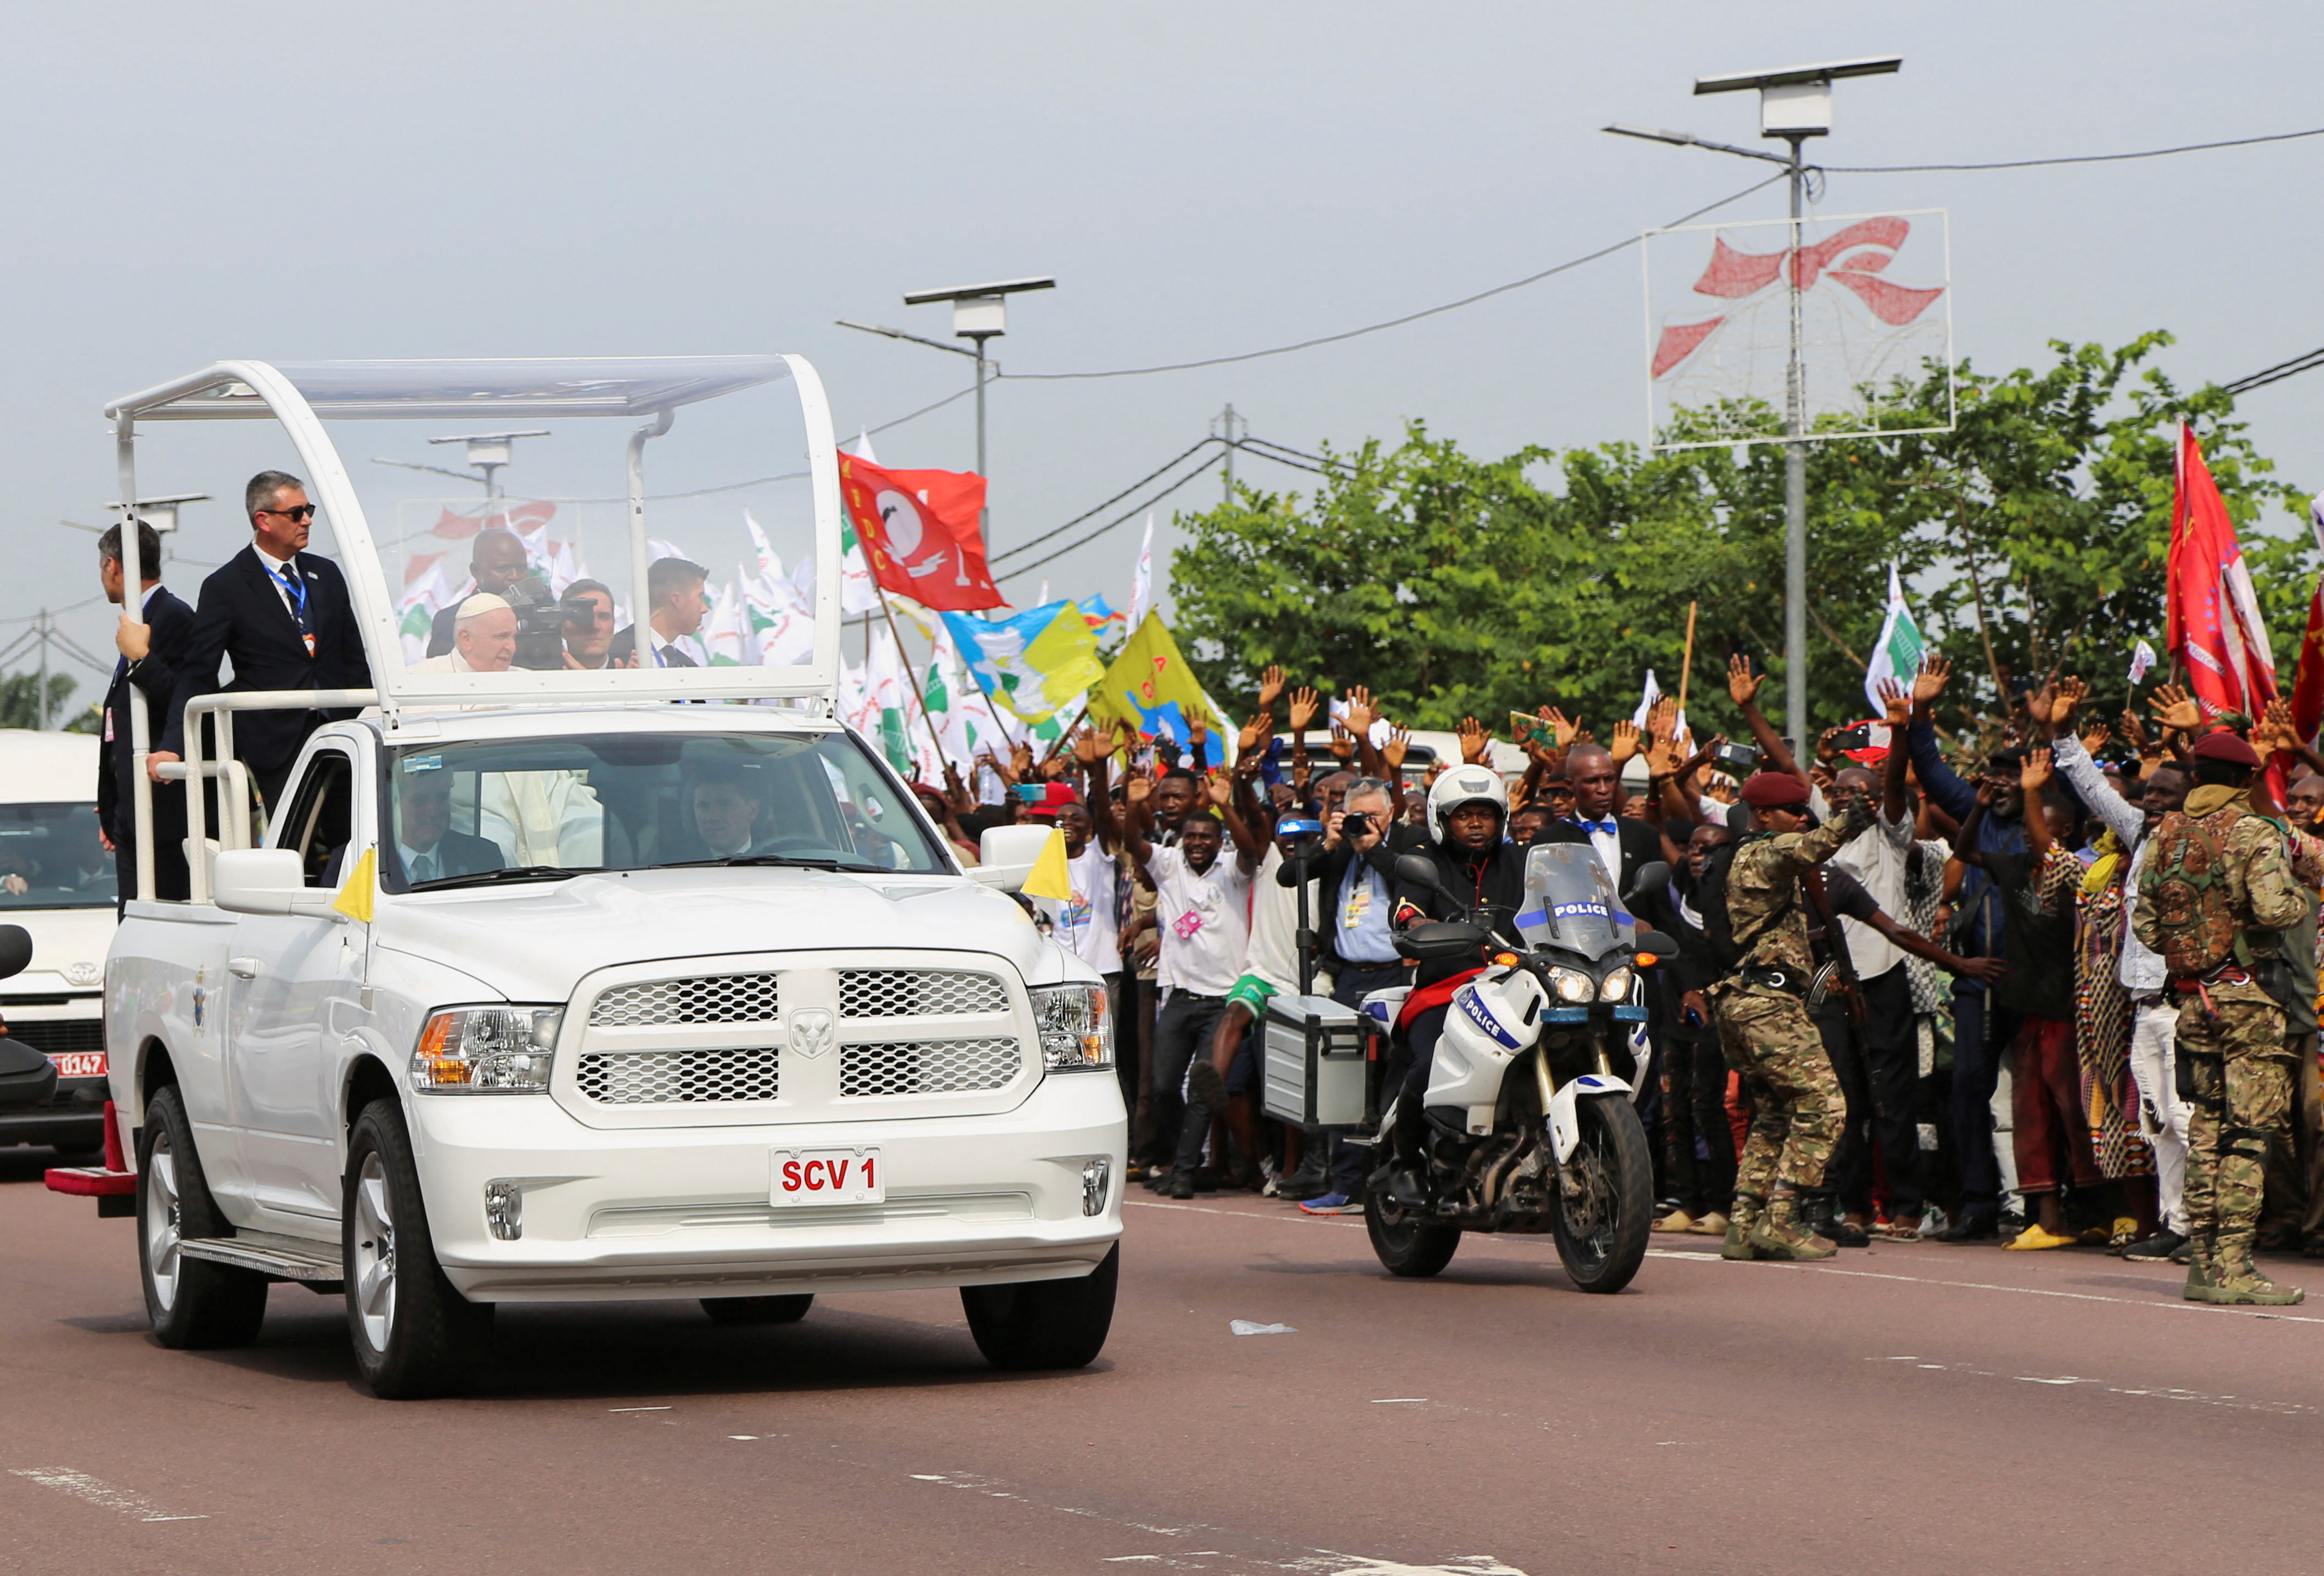 Residentes de Kinshasa dan la bienvenida al papa Francisco, en su viaje apostólico, en Kinshasa, República Democrática del Congo, 31 de enero de 2023. REUTERS/Justin Makangara